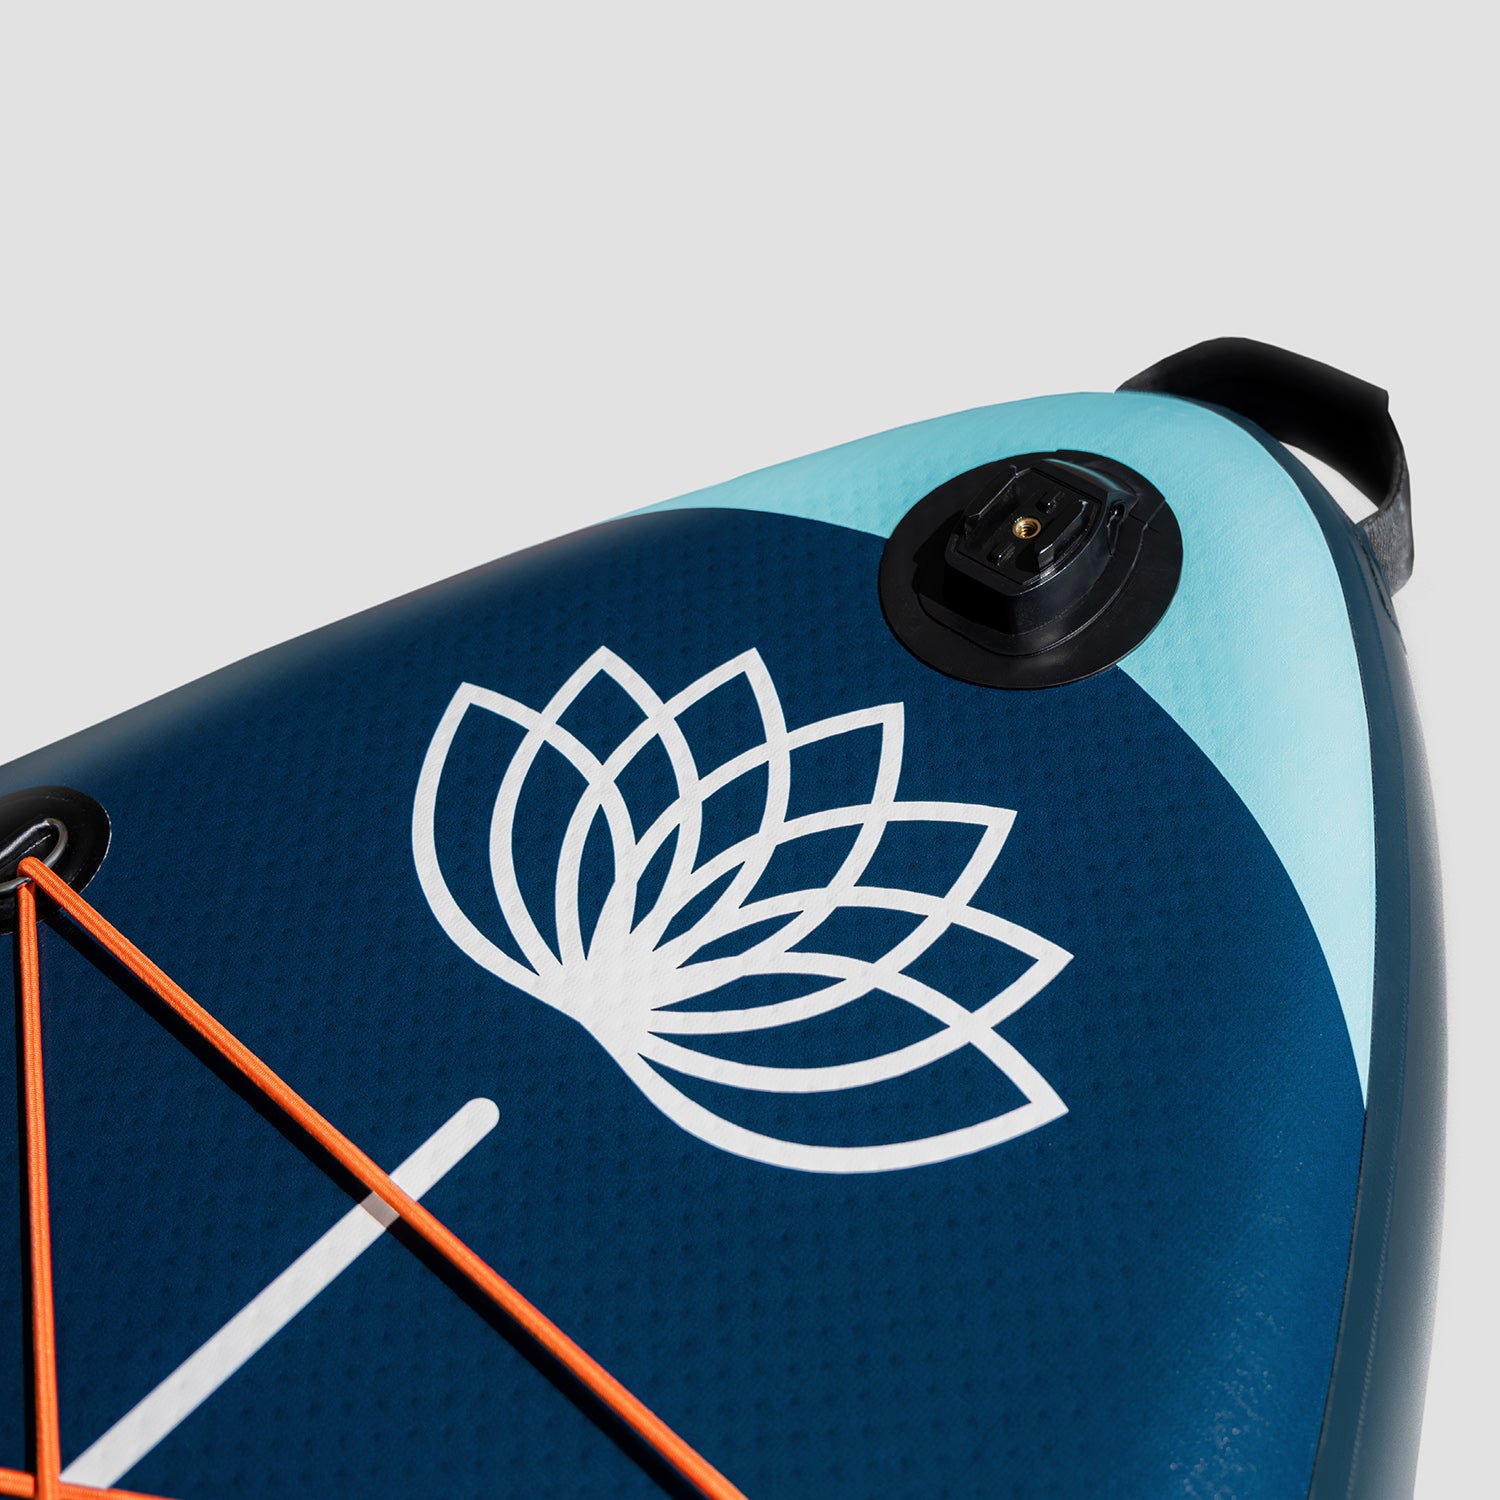 "Système d'accroche pour caméra GoPro sur le pont des SUP Yogaterrae avec le symbole végétal et aquatique du lotus"